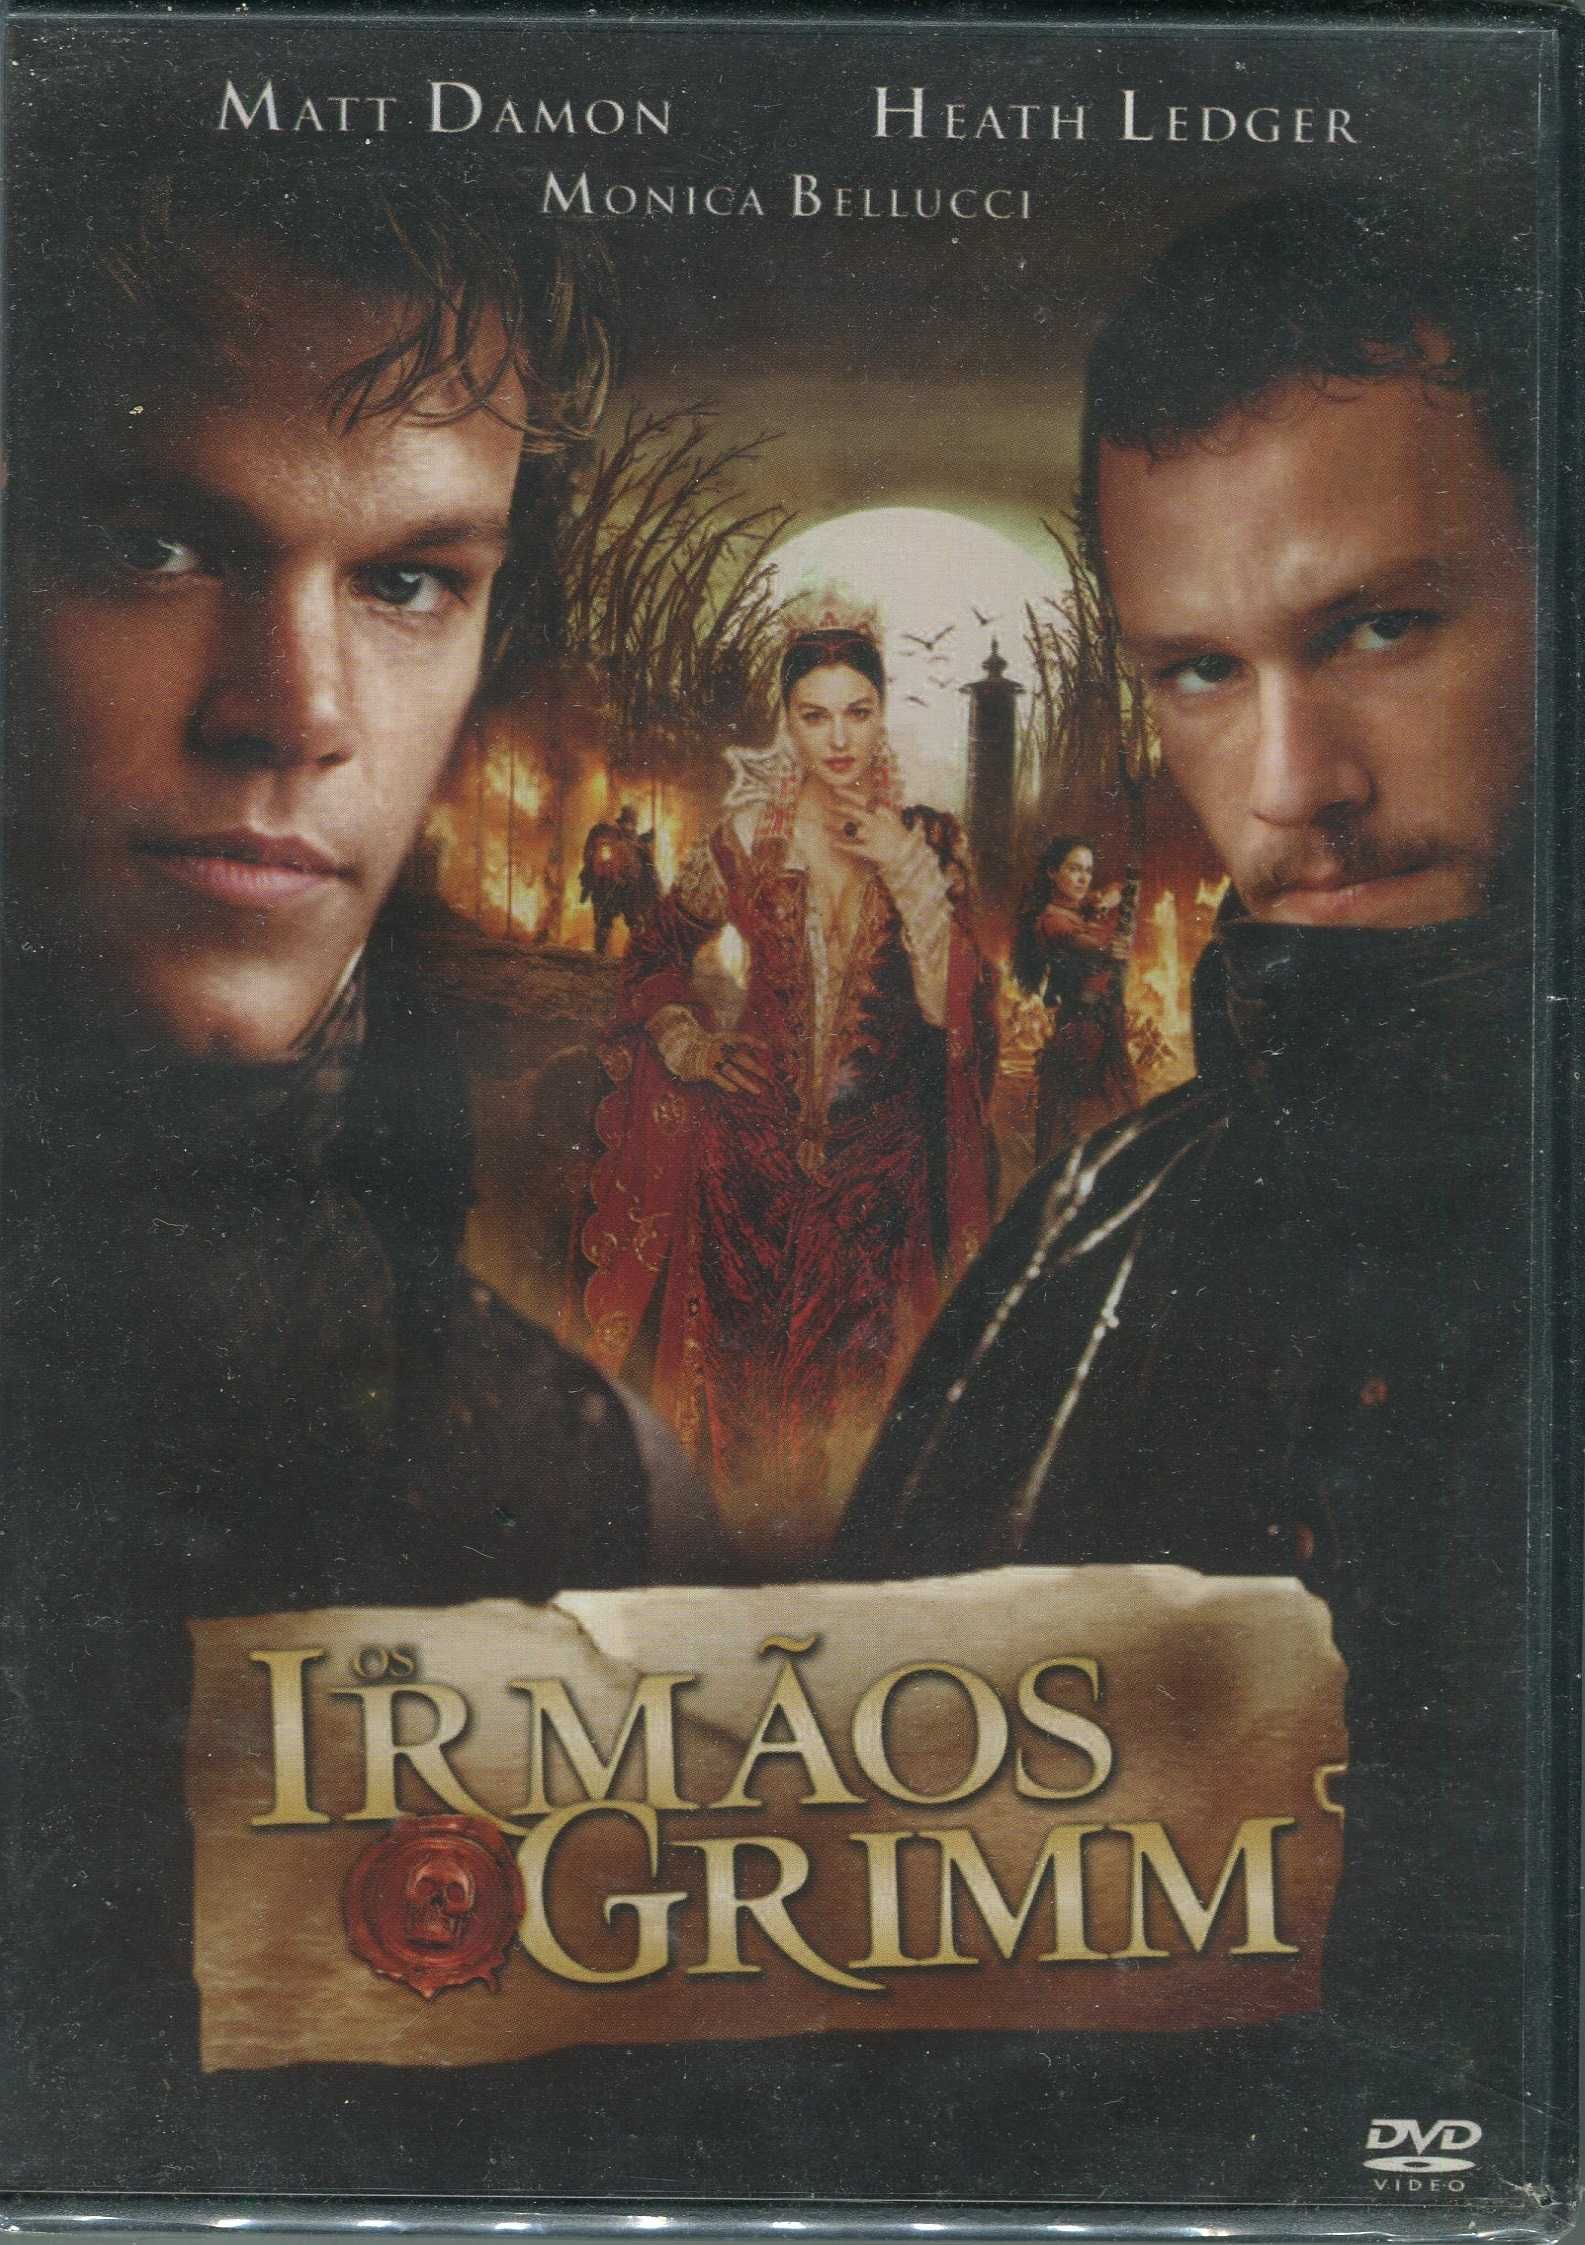 DVD’s Originais Novos/Selados - 4€ a 12€ - Acção